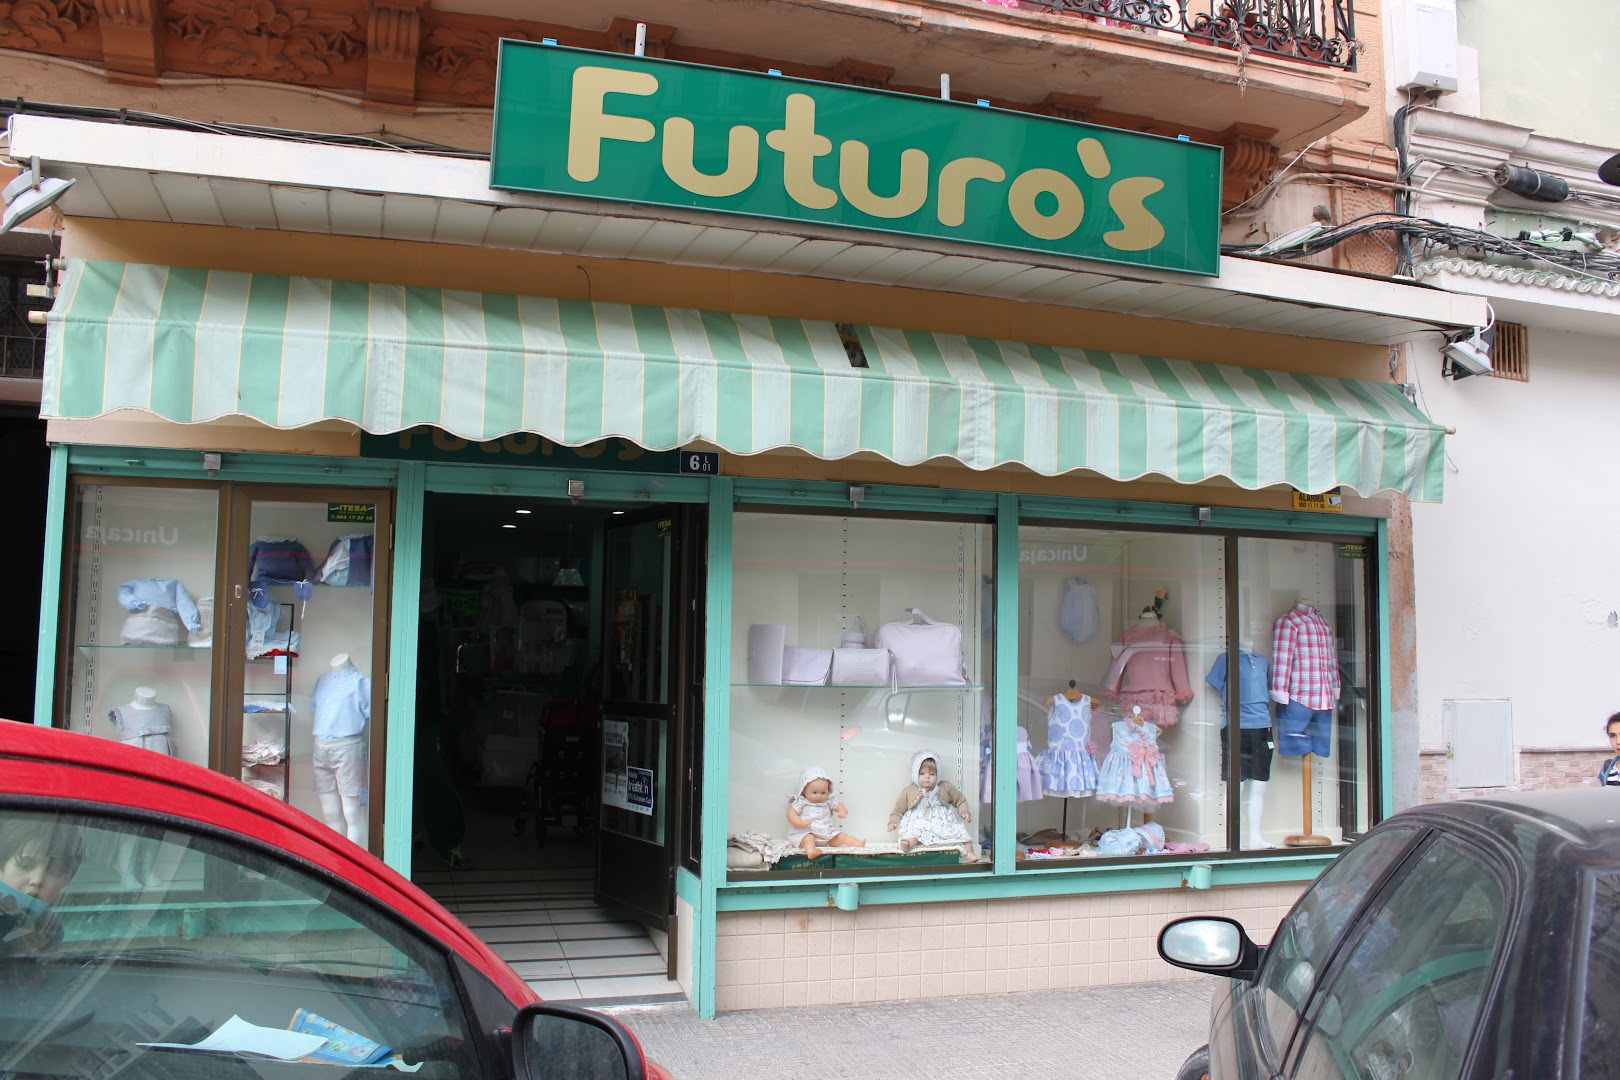 Futuro's